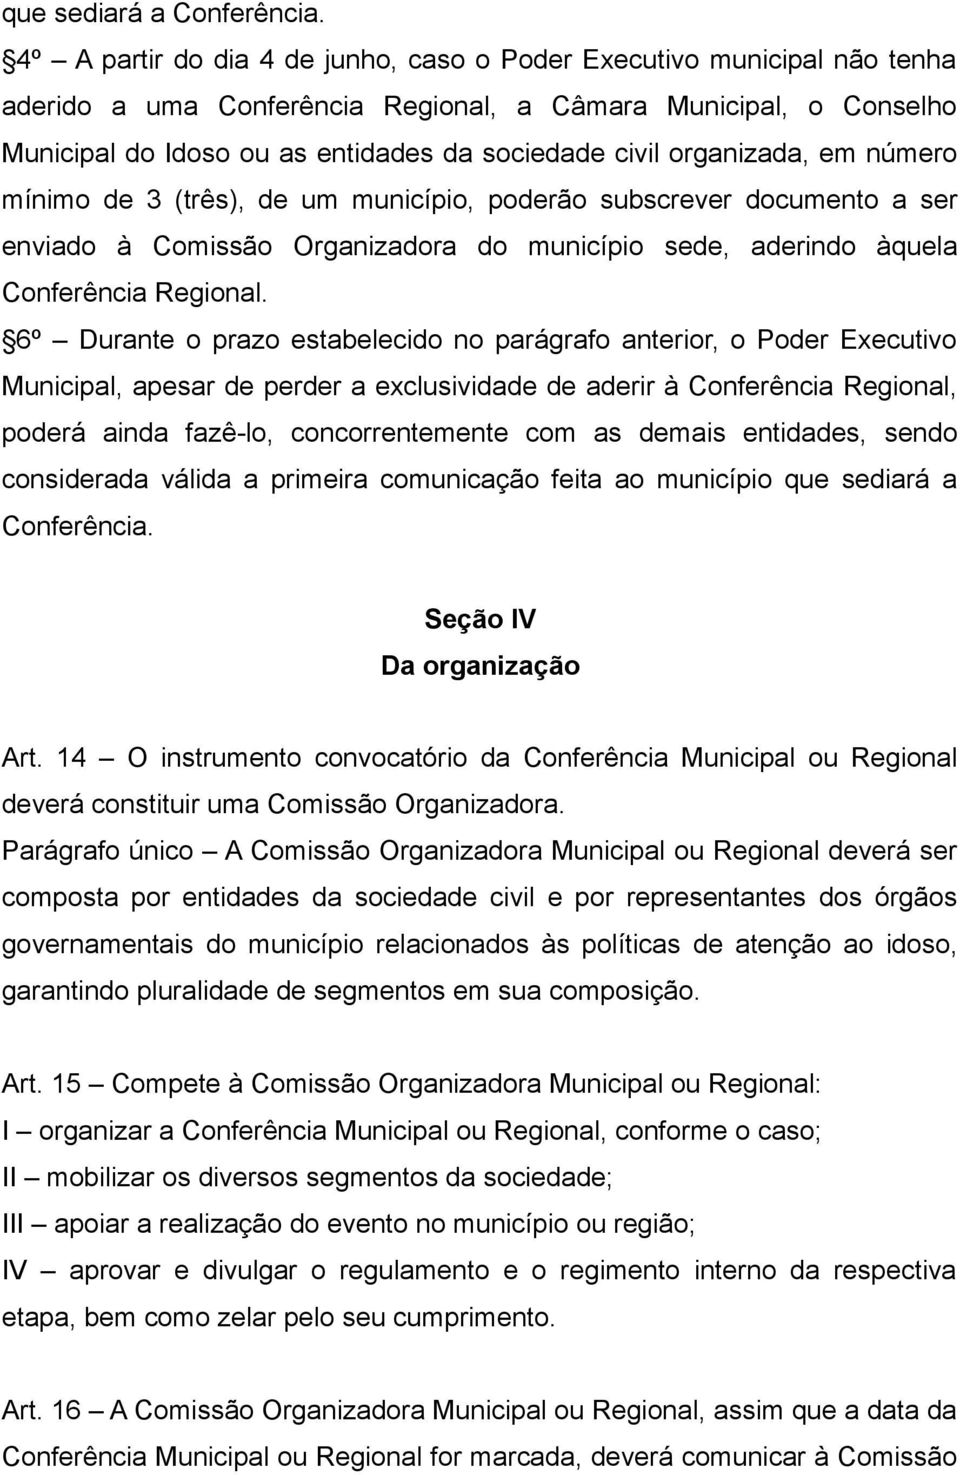 organizada, em número mínimo de 3 (três), de um município, poderão subscrever documento a ser enviado à Comissão Organizadora do município sede, aderindo àquela Conferência Regional.